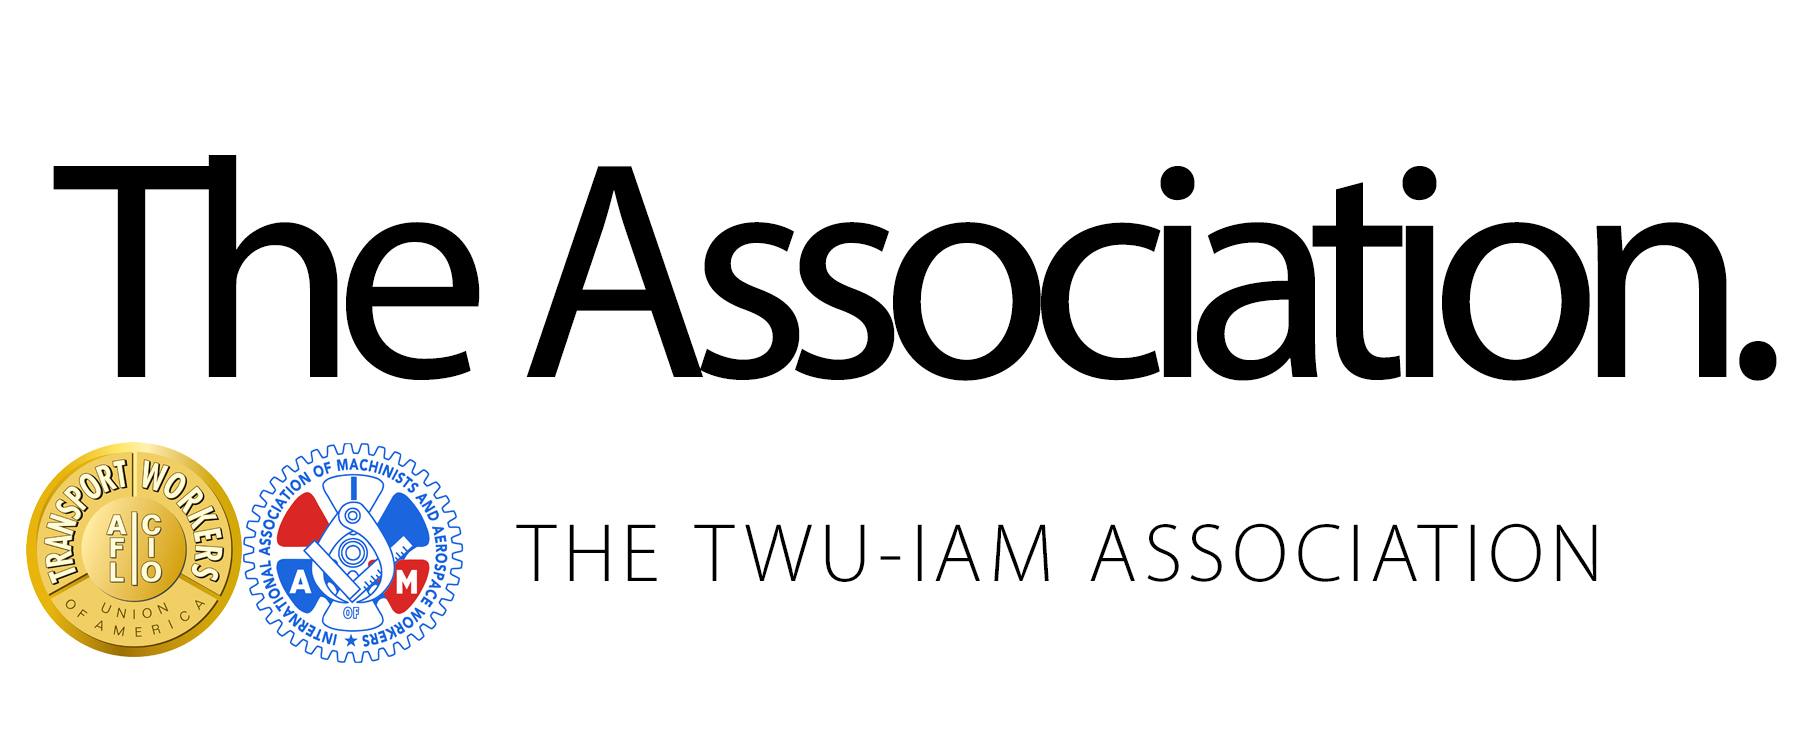 Double AA Airline Logo - TWU-IAM Association